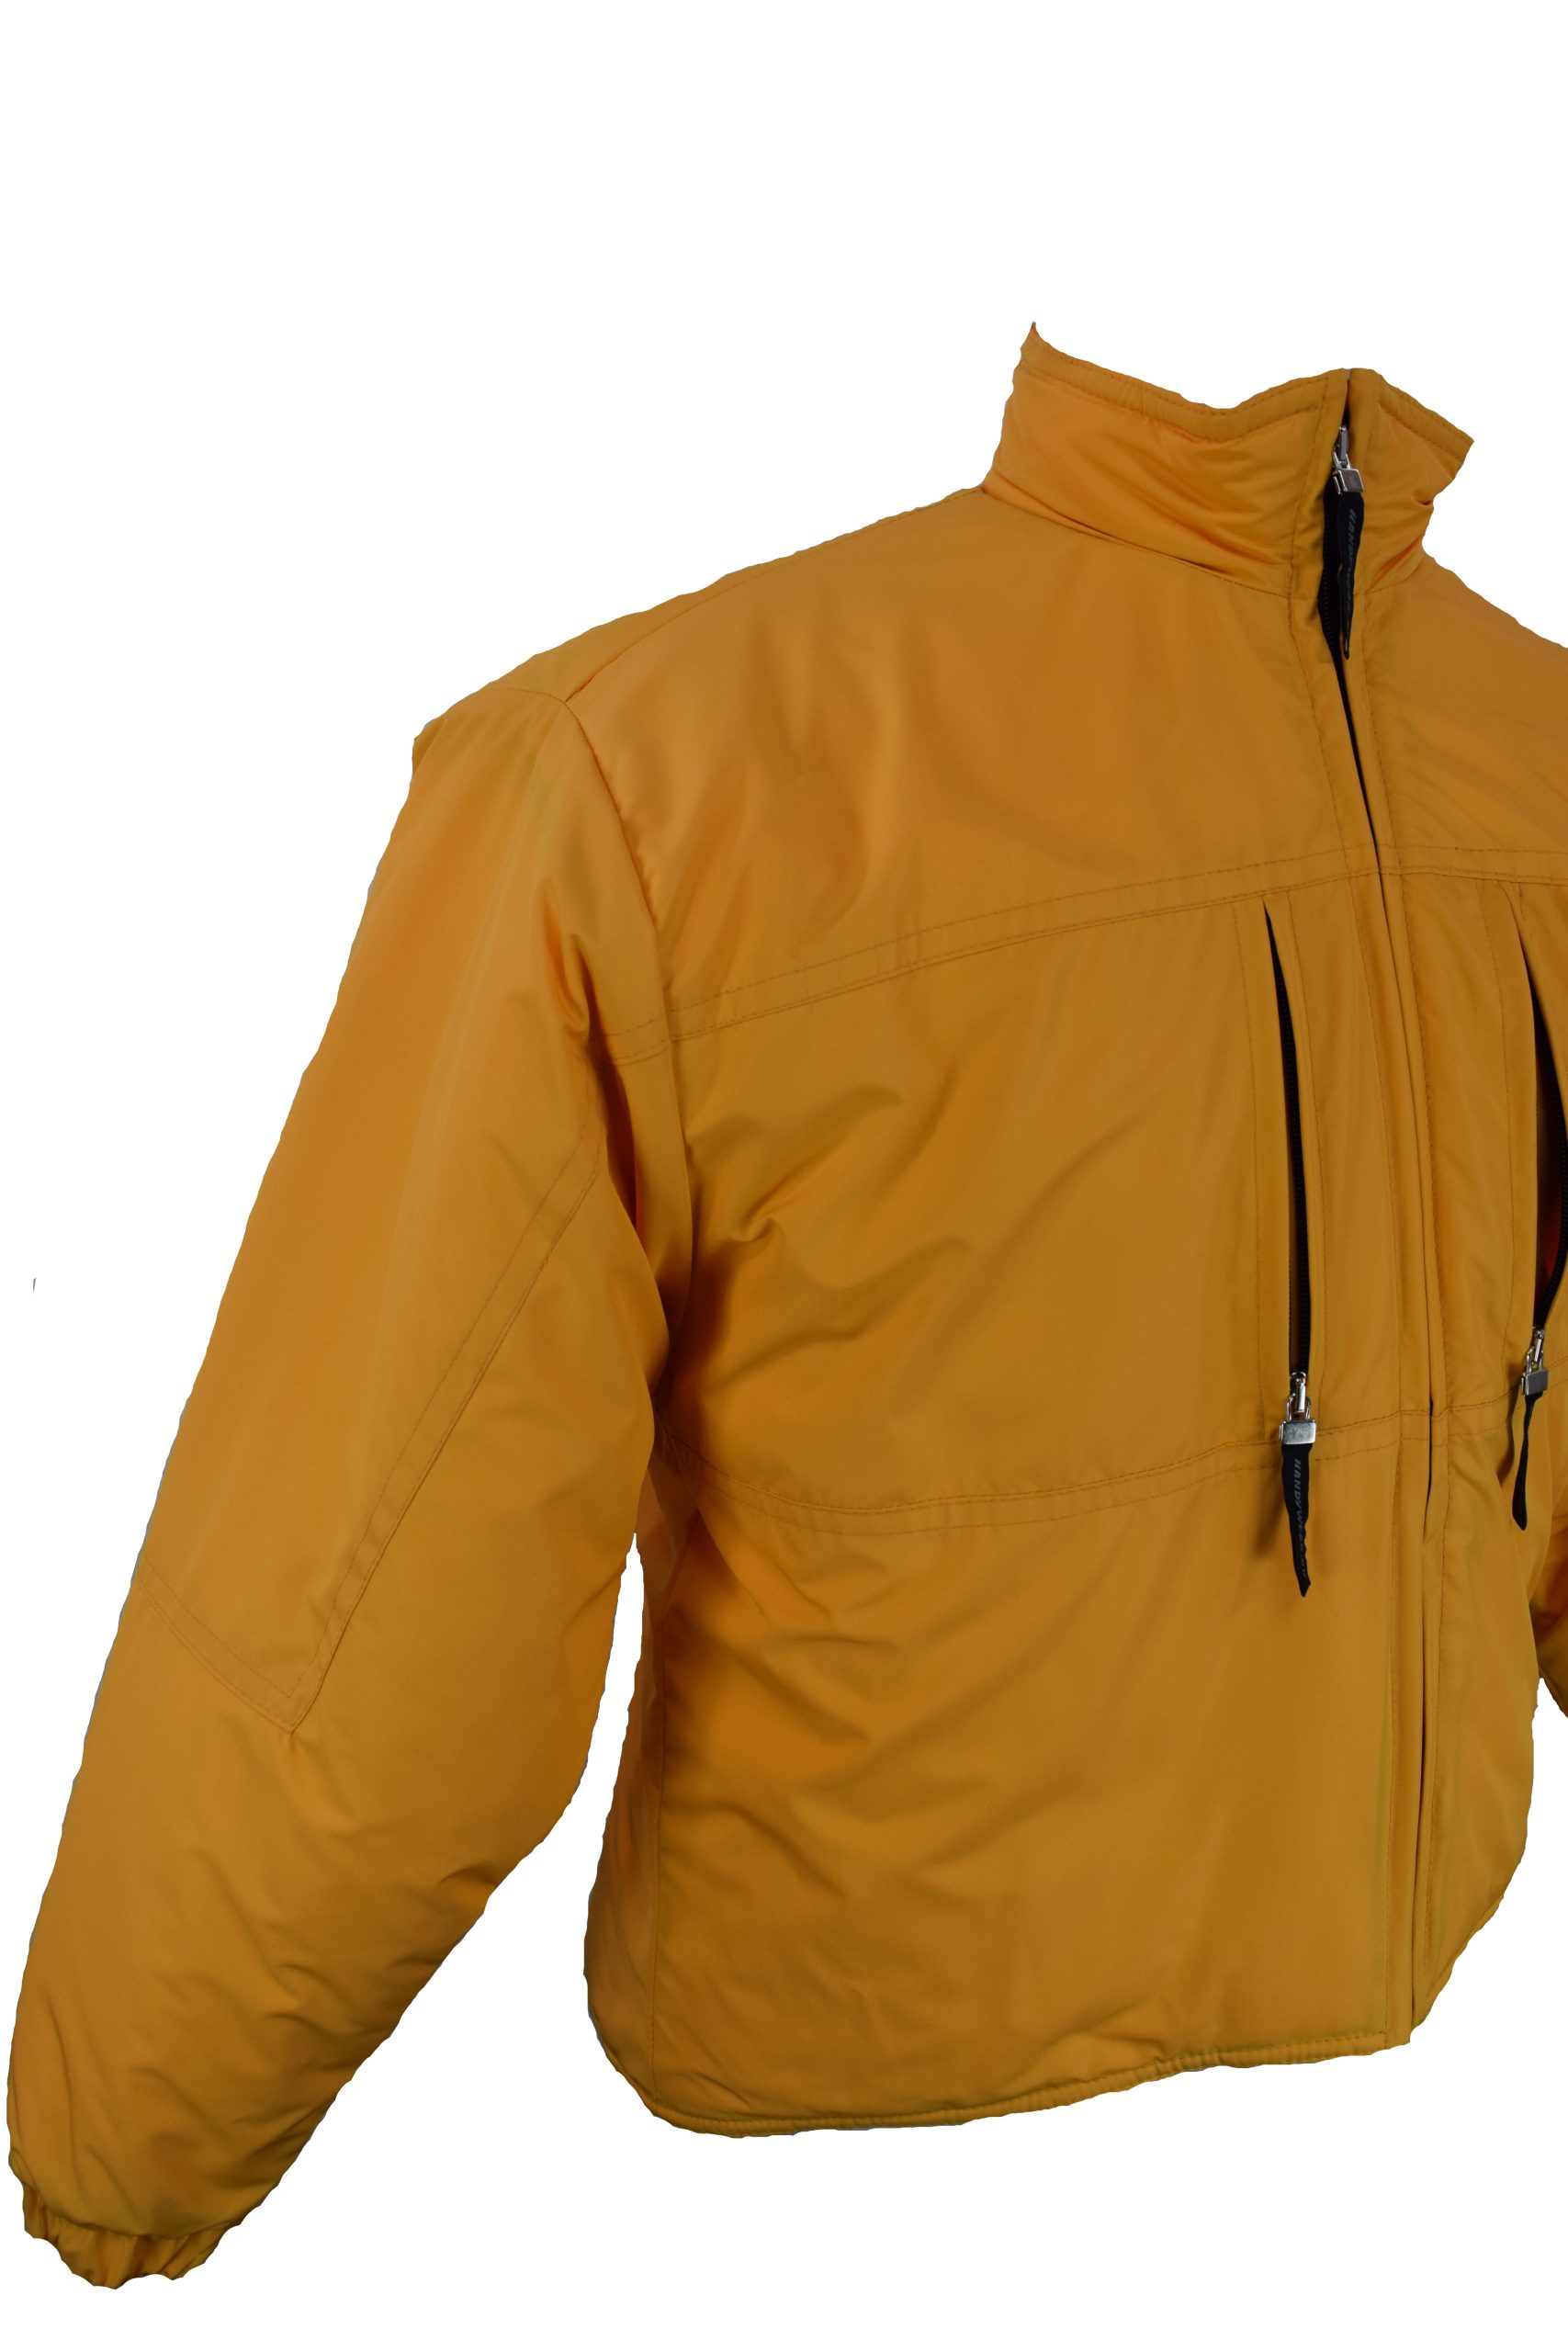 Jakke - jakke med tilpasset ryg til kørestolsbruger.